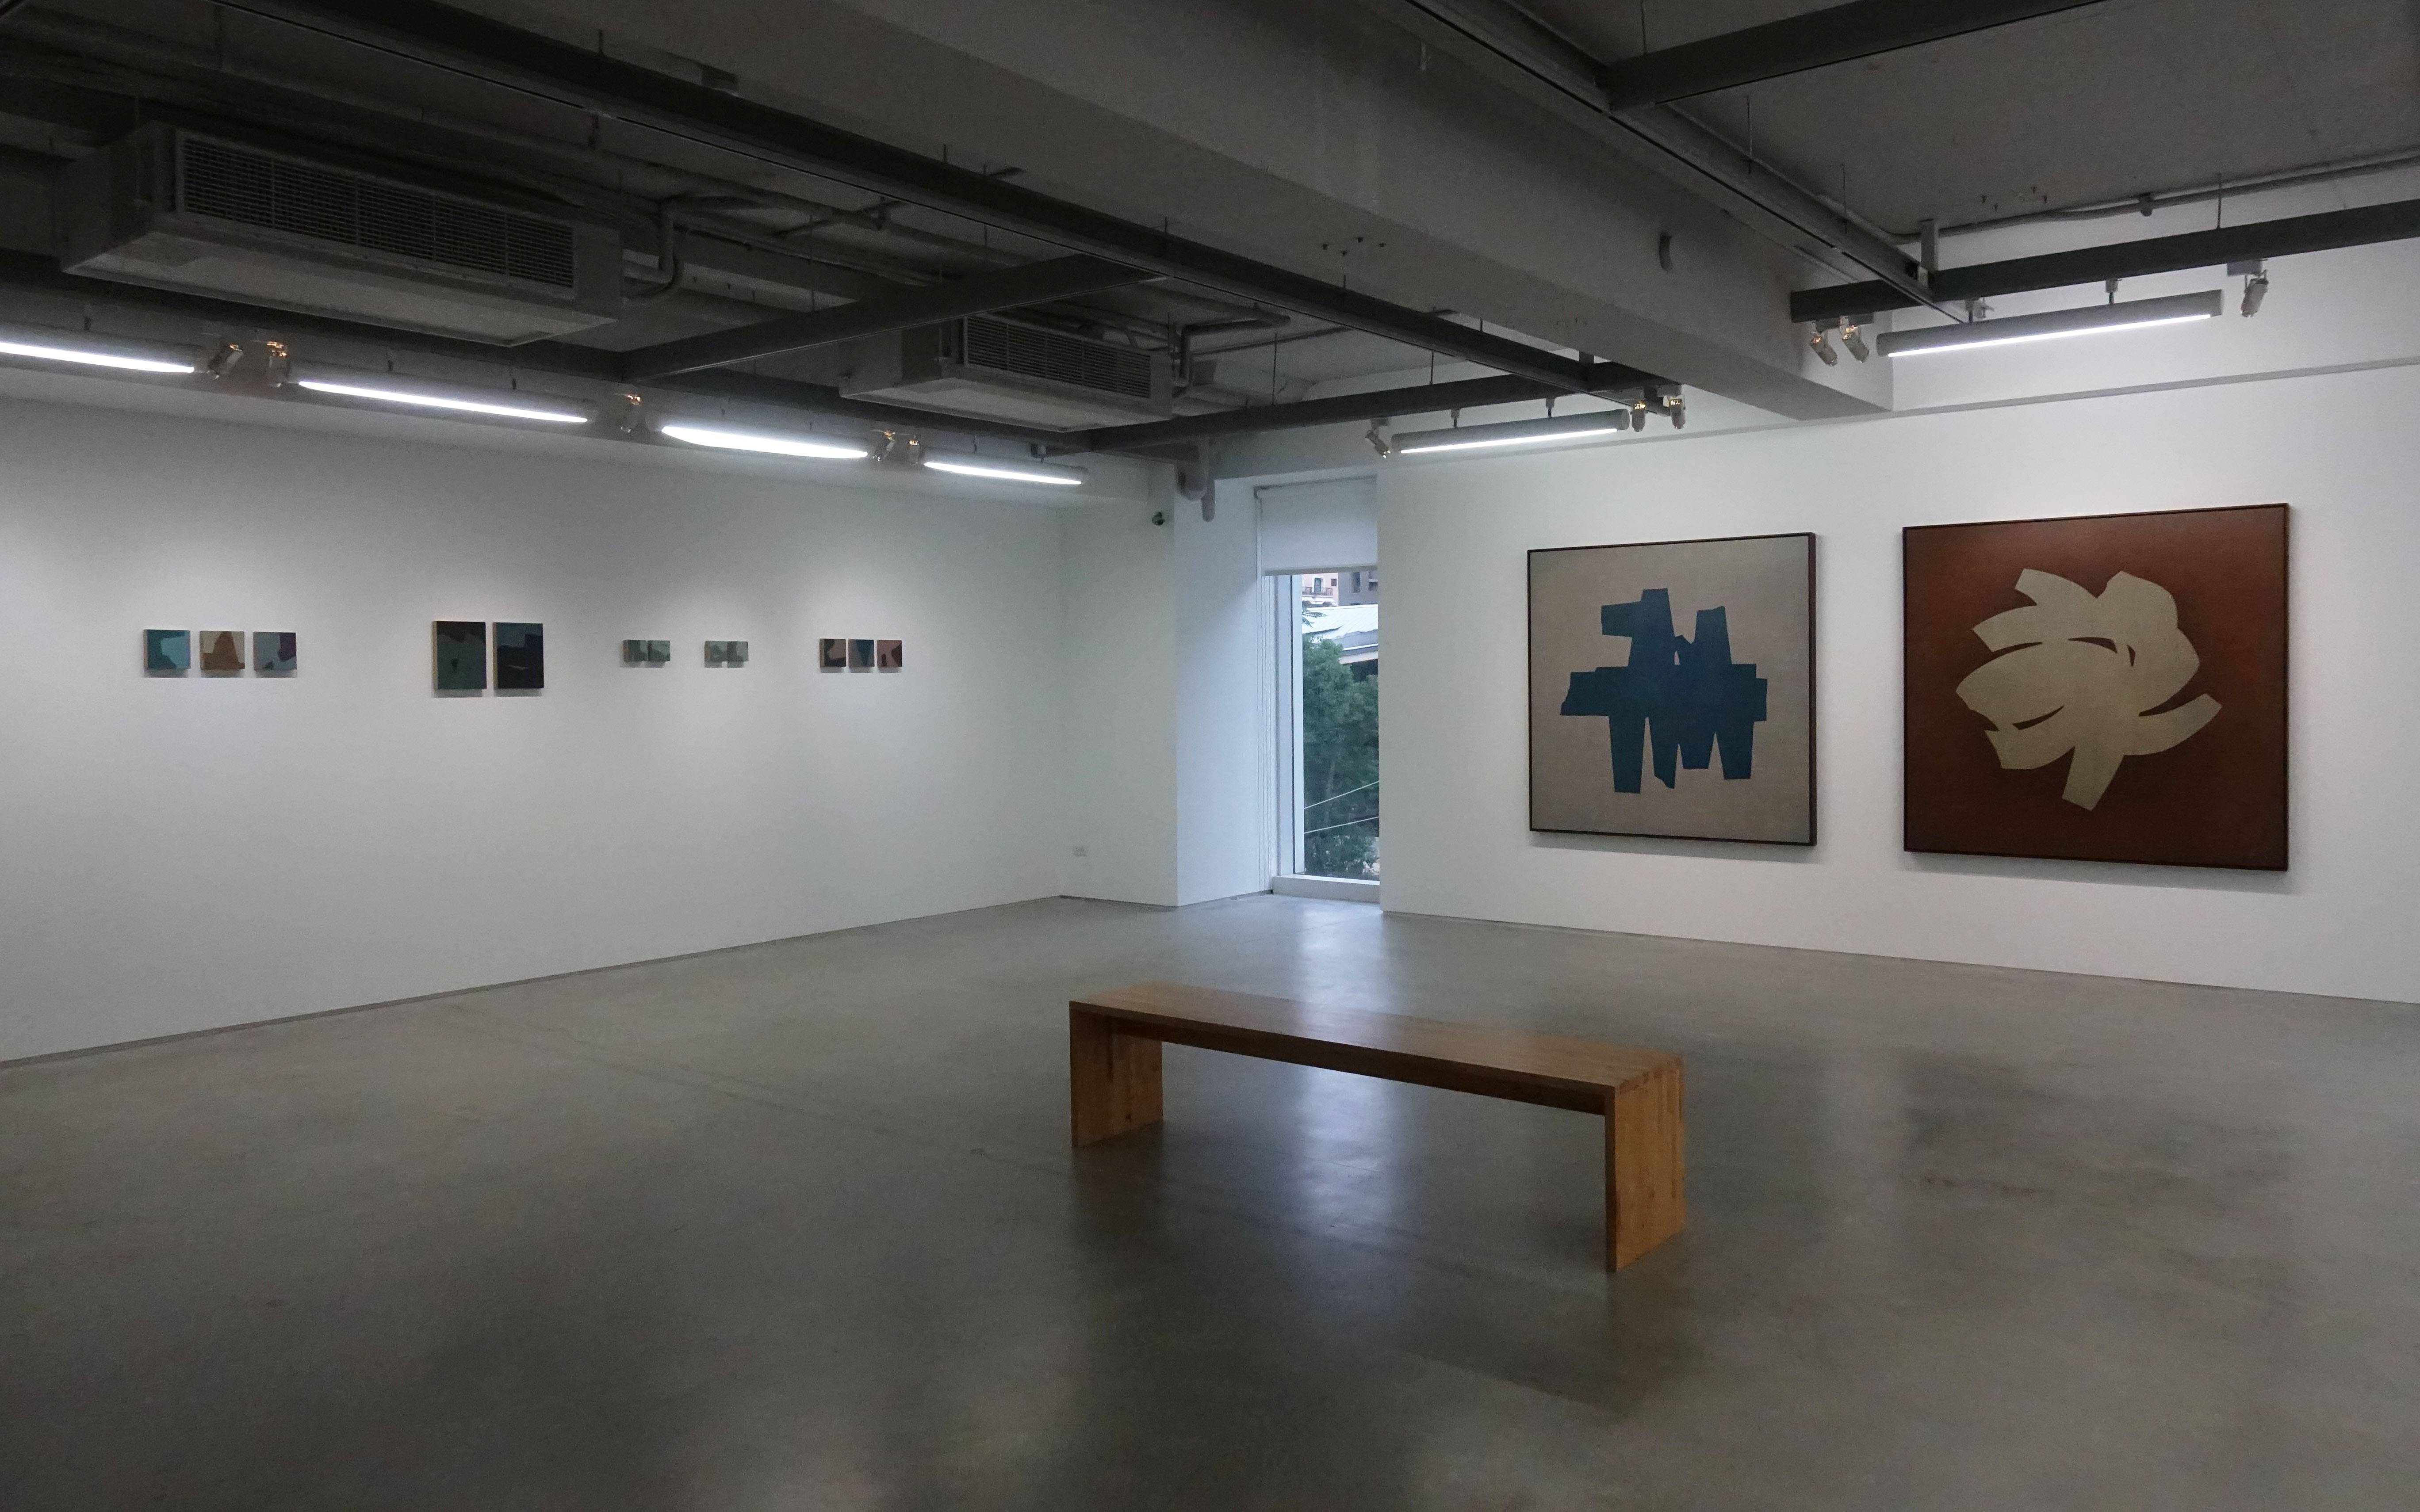 双方藝廊「未定物-吳東龍個展」二樓空間展覽一隅。